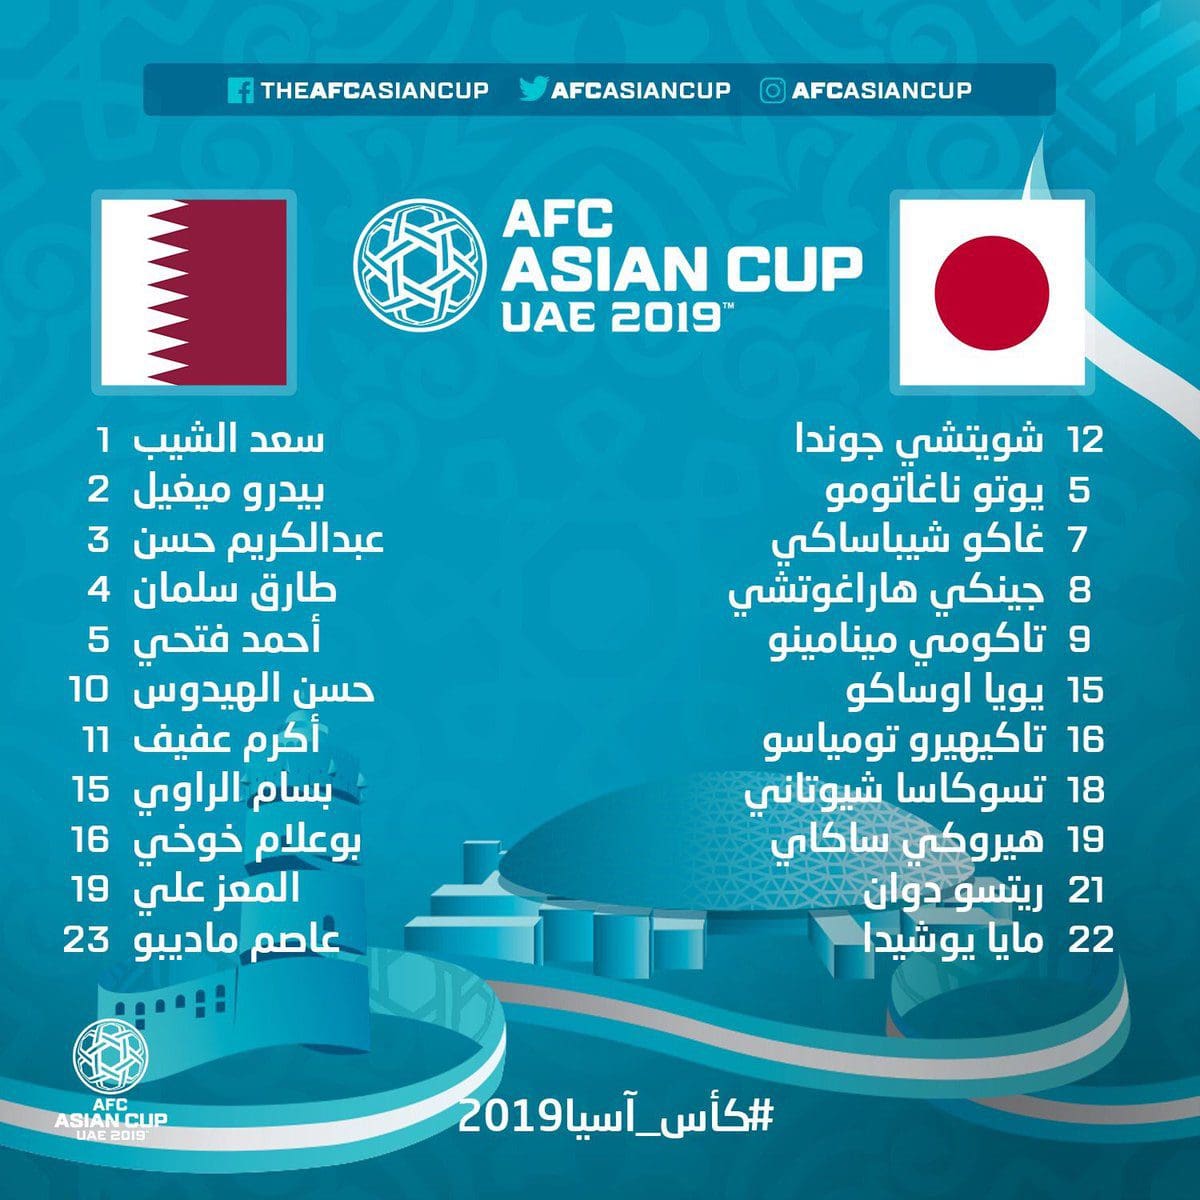 مباراة قطر واليابان اليوم في نهائي كأس أسيا 2019 وقناة مفتوحة تنقل المباراة 2 30/1/2019 - 2:40 م